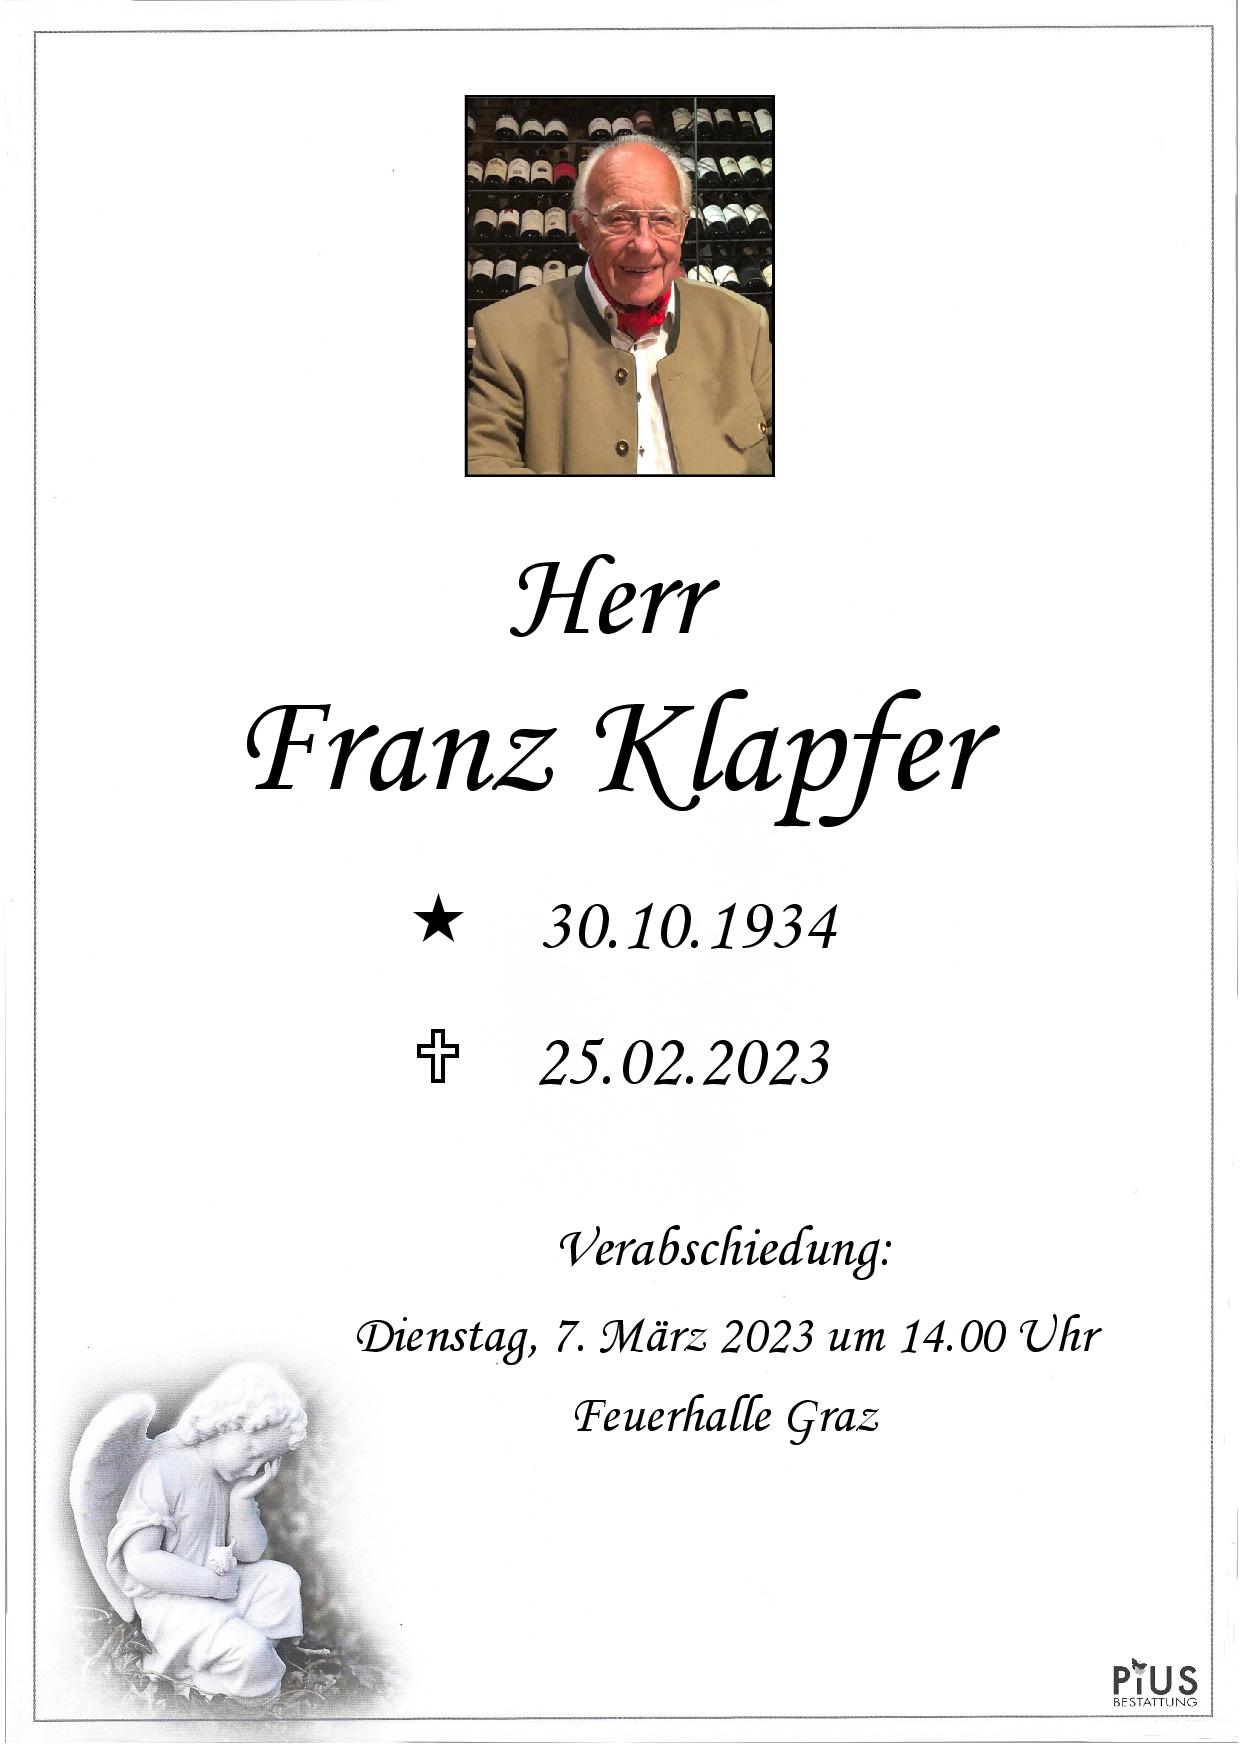 Franz Klapfer